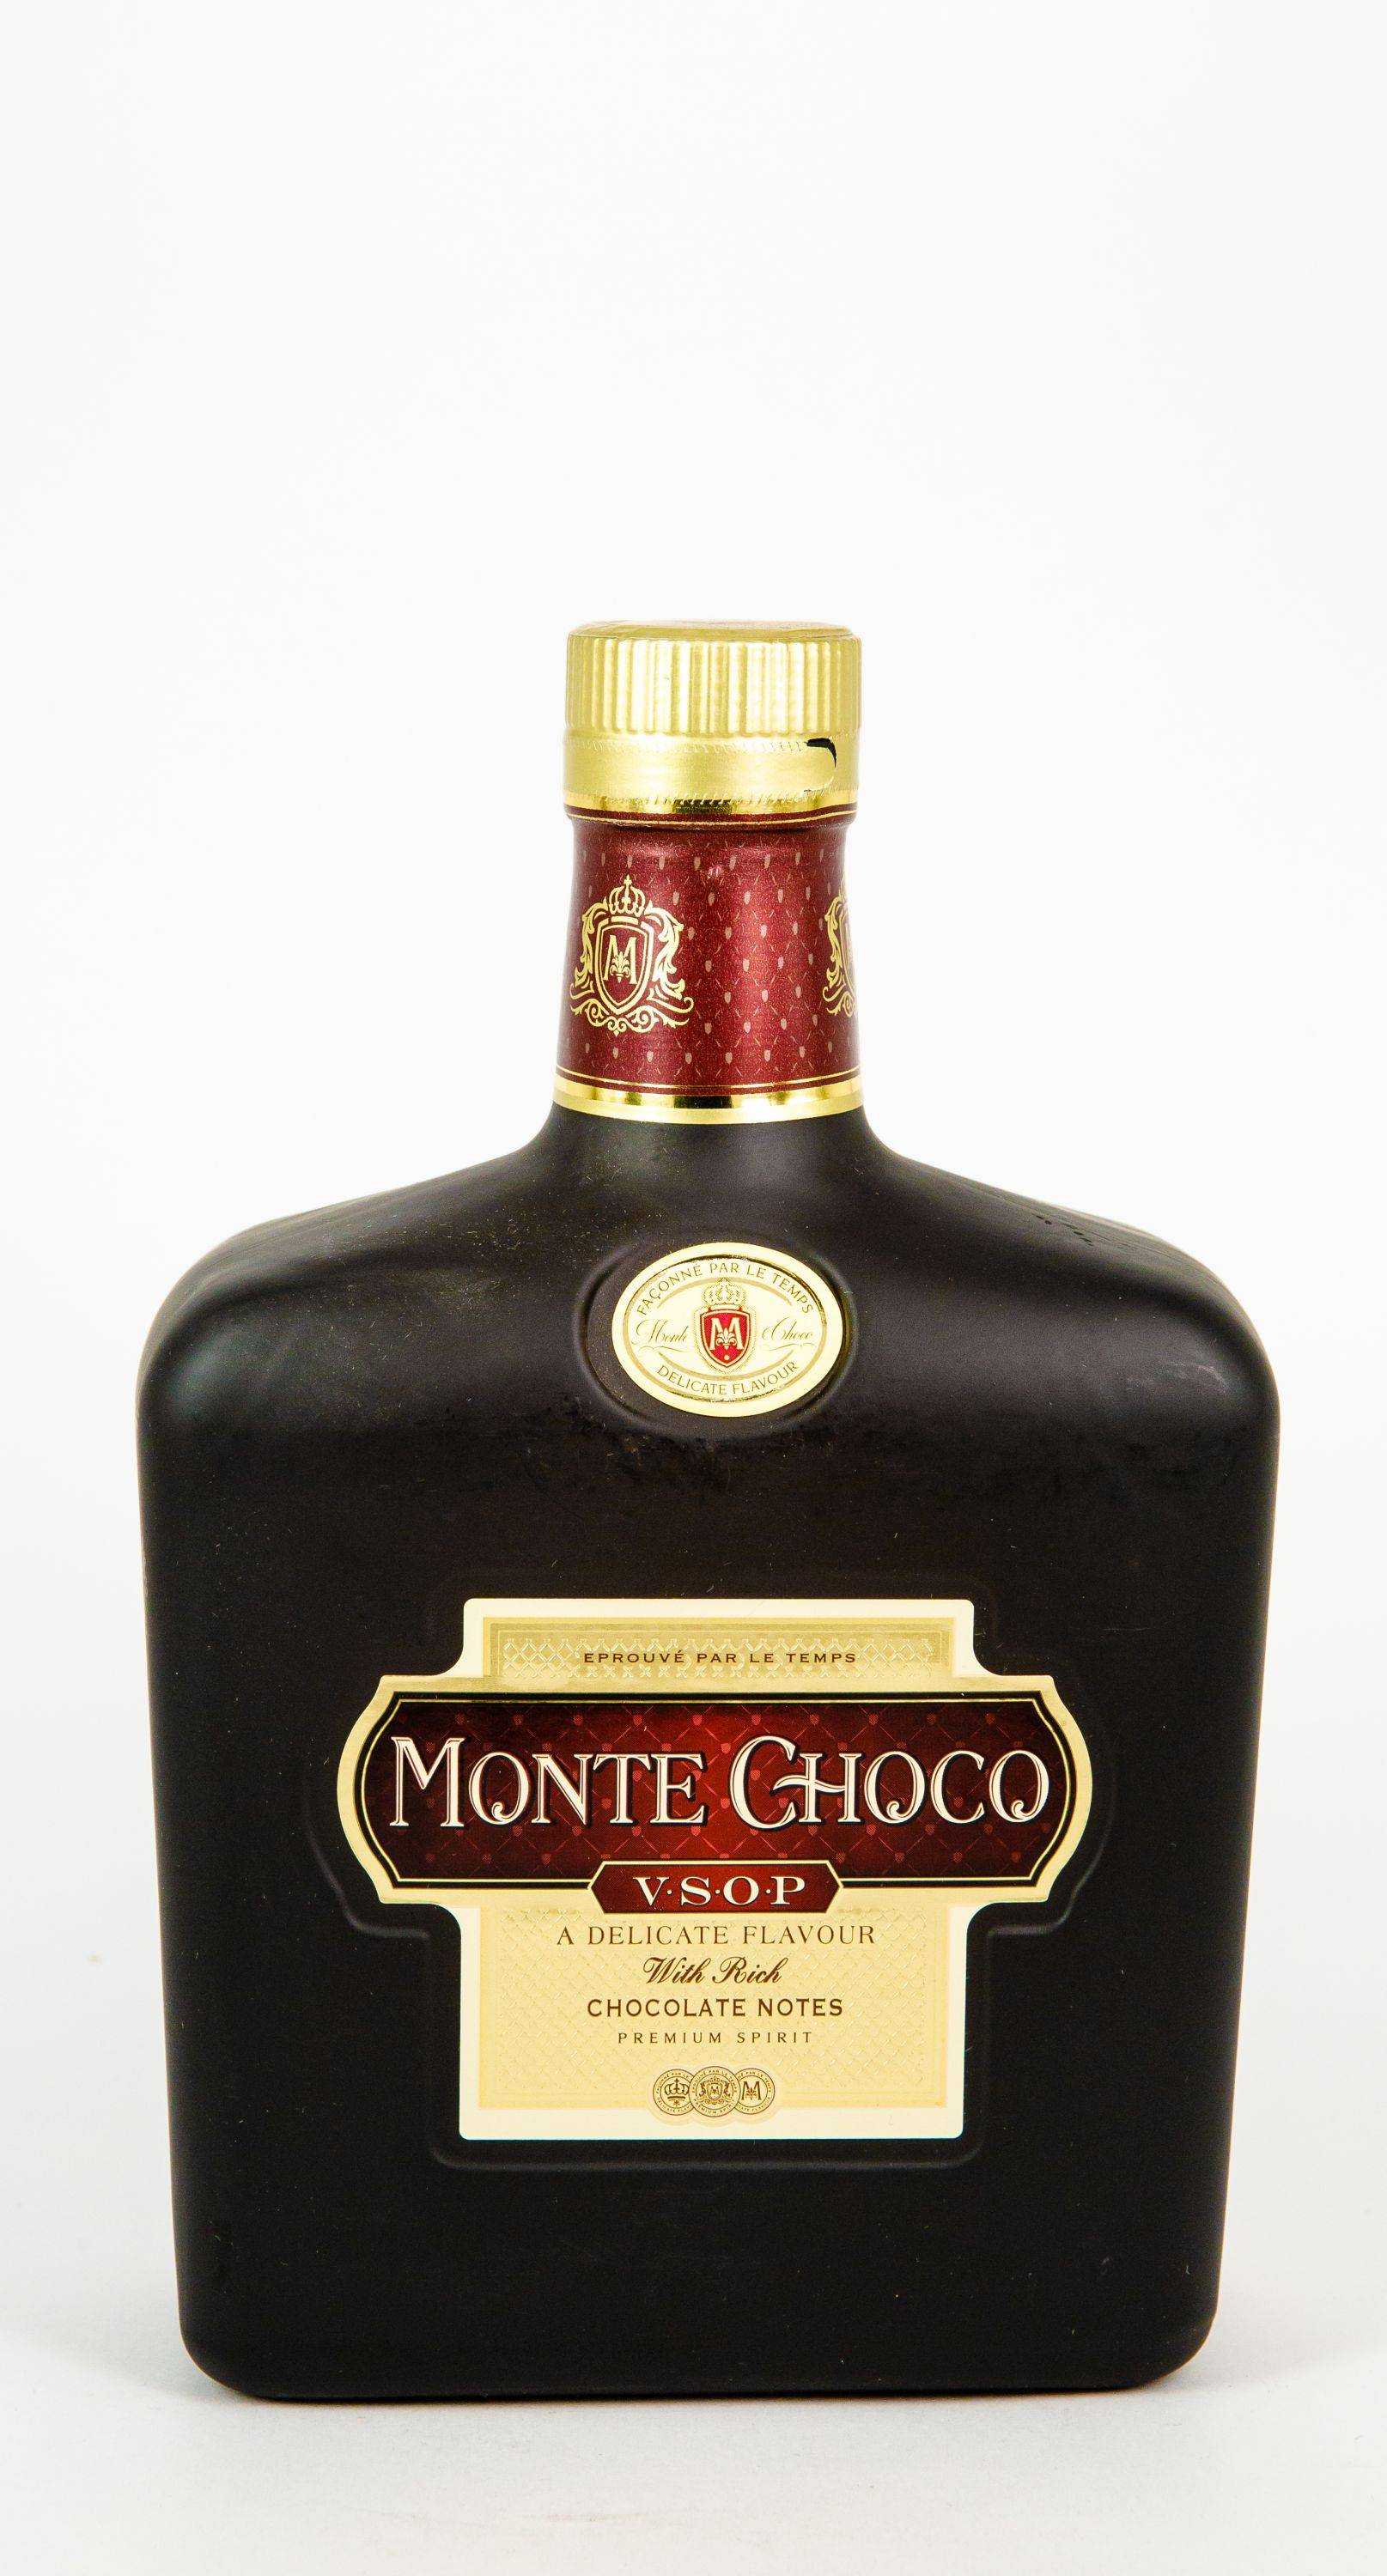 Коньяк вкус шоколада. Монте Чоко коньяк шоколадный. Коньячный напиток Монте шоко. Монте Чоко коньяк КБ. Chocolatier коньяк Monte Choco.